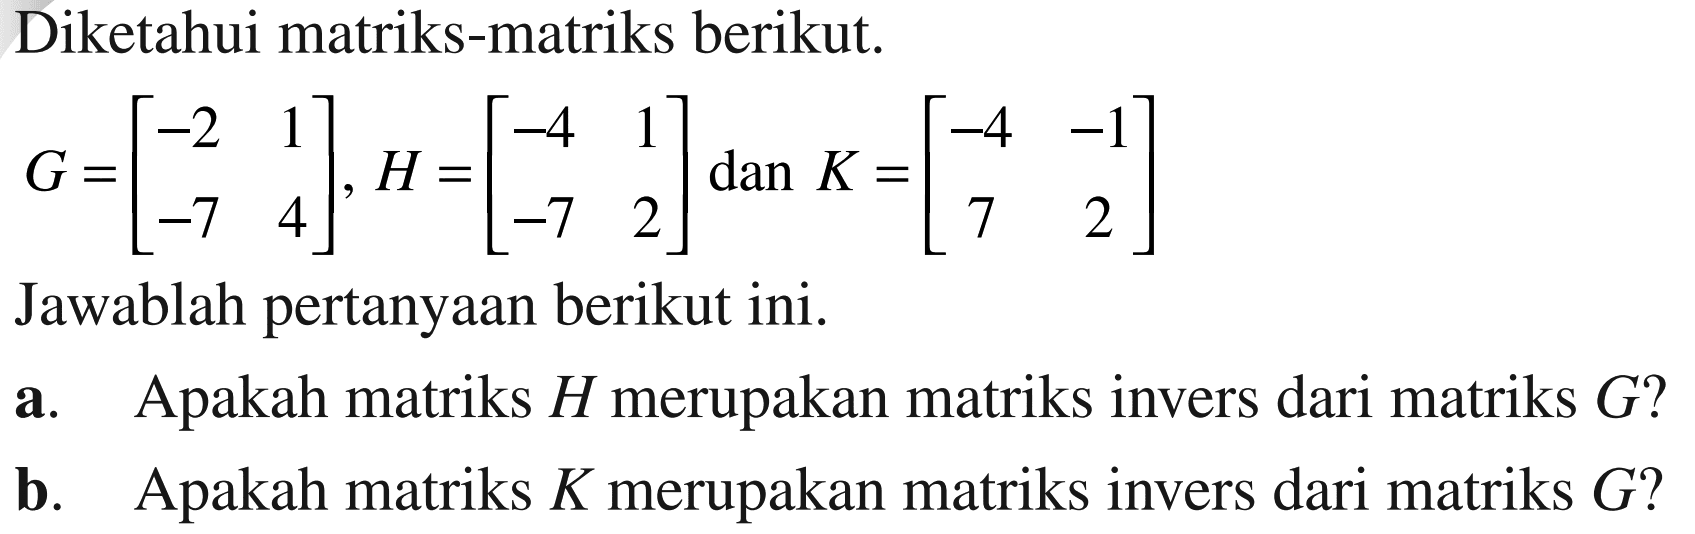 Diketahui matriks-matriks berikut. G=[-2 1 -7 4], H=[-4 1 -7 2] dan K=[-4 -1 7 2] Jawablah pertanyaan berikut ini. a. Apakah matriks H merupakan matriks invers dari matriks G? b. Apakah matriks K merupakan matriks invers dari G?